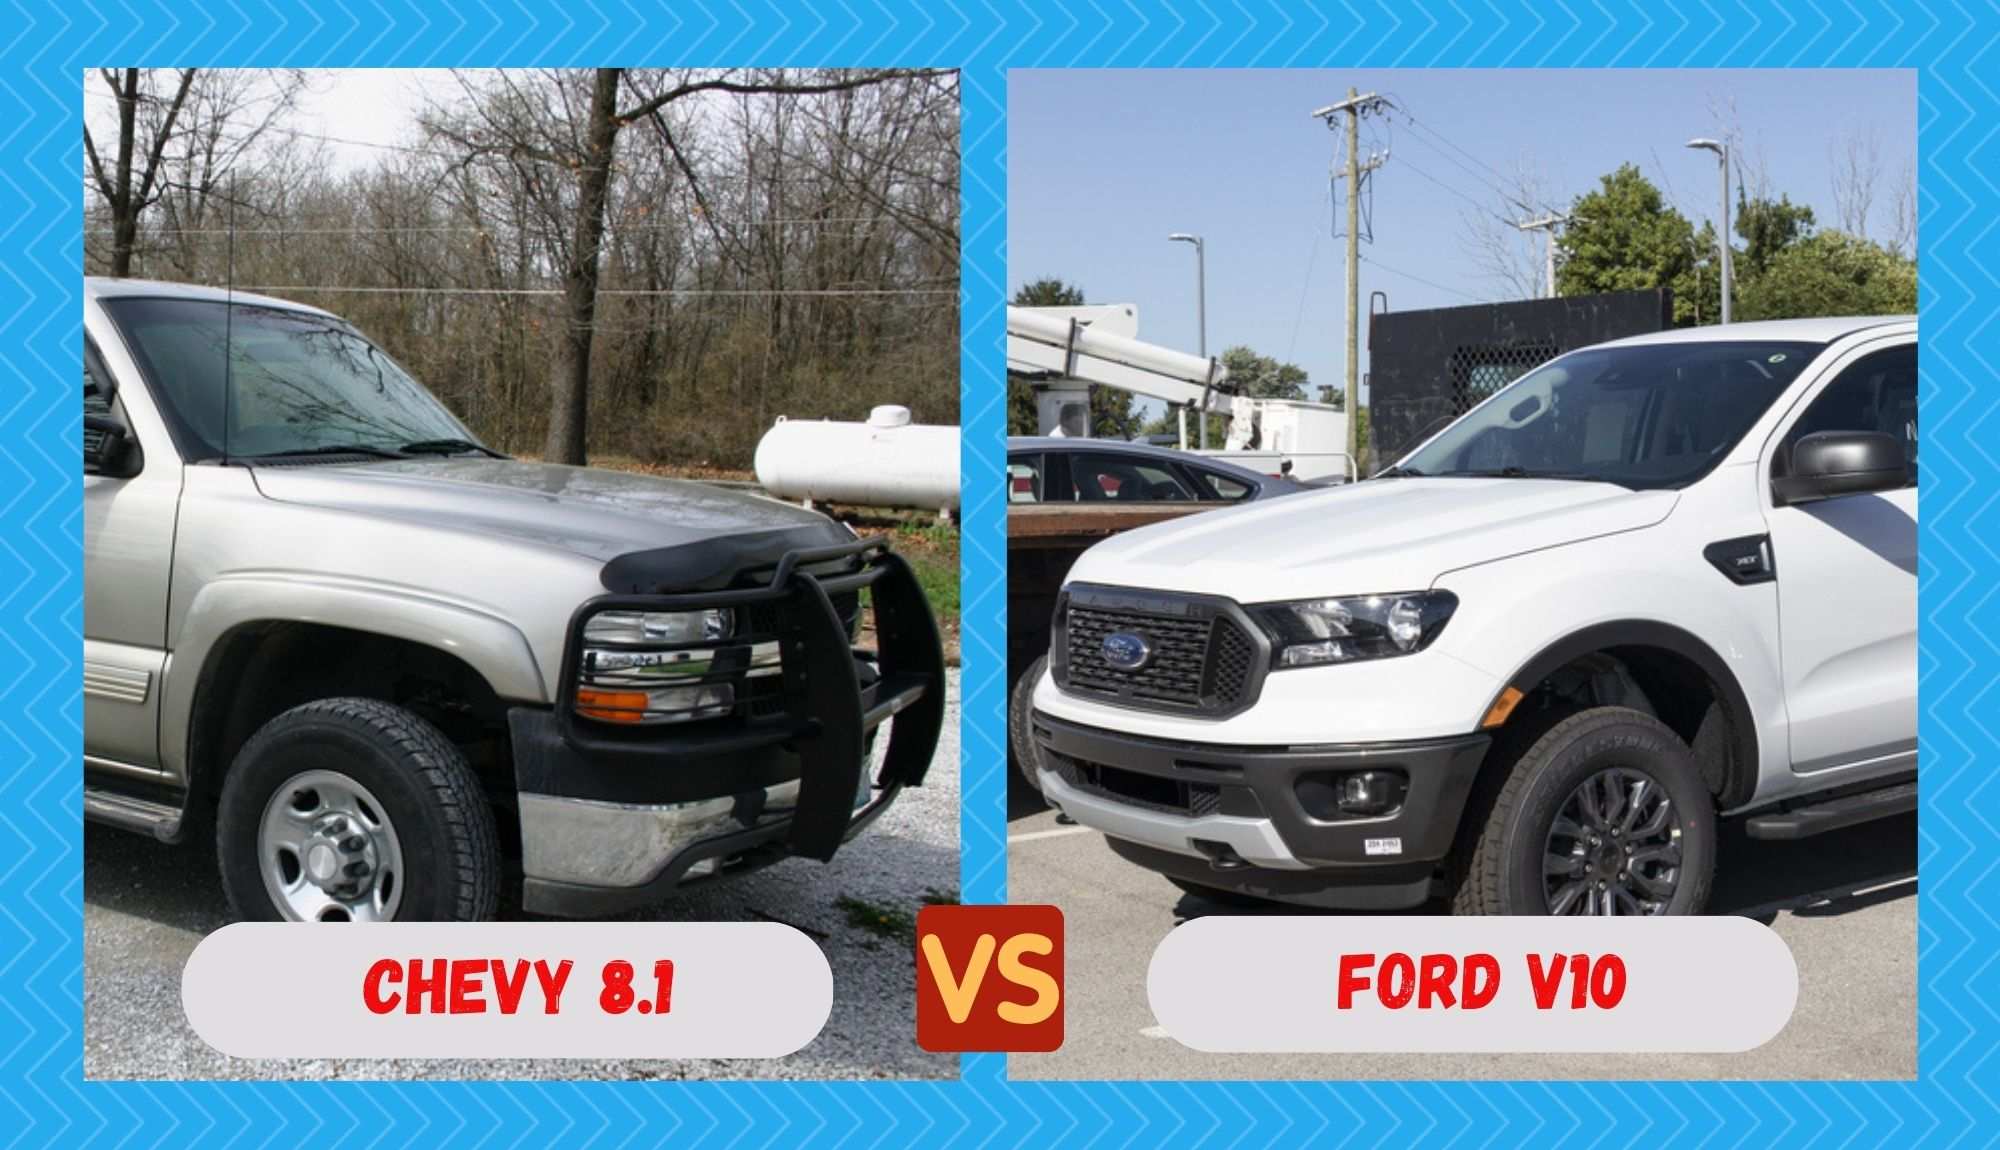 chevy 8.1 vs ford v10 motorhome